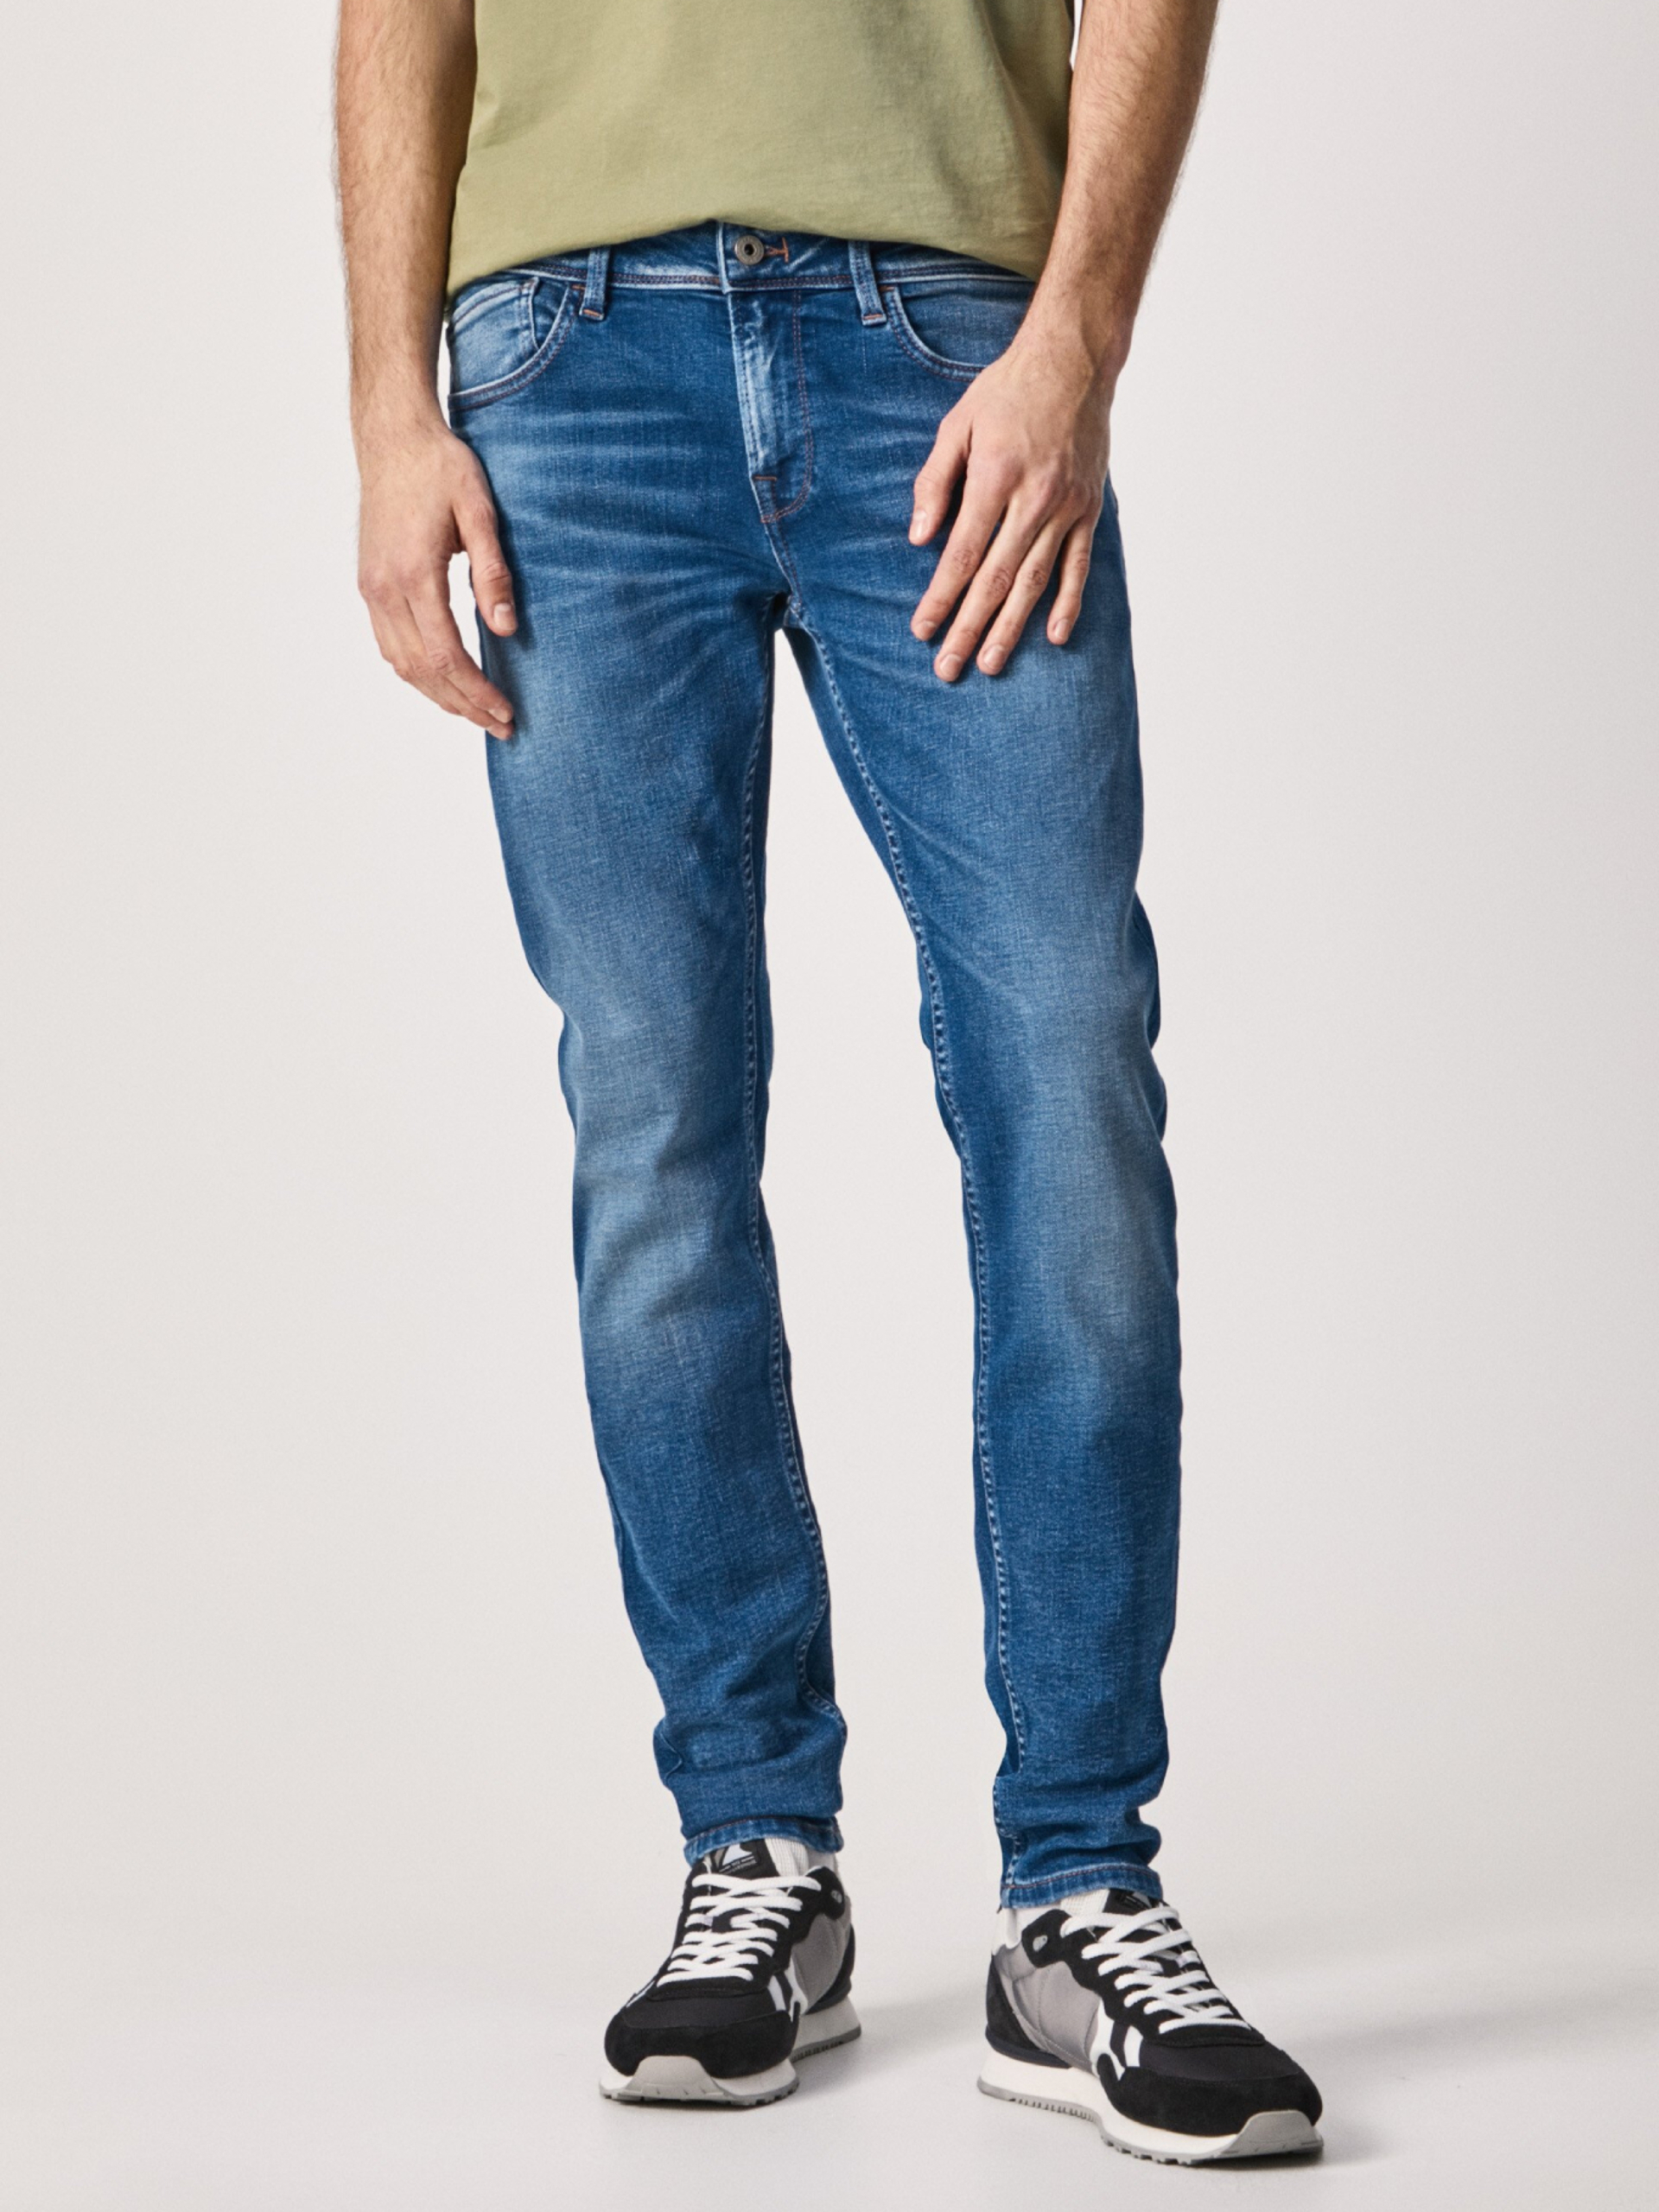 Pepe Jeans pánské modré džíny Finsbury - 38/32 (0)